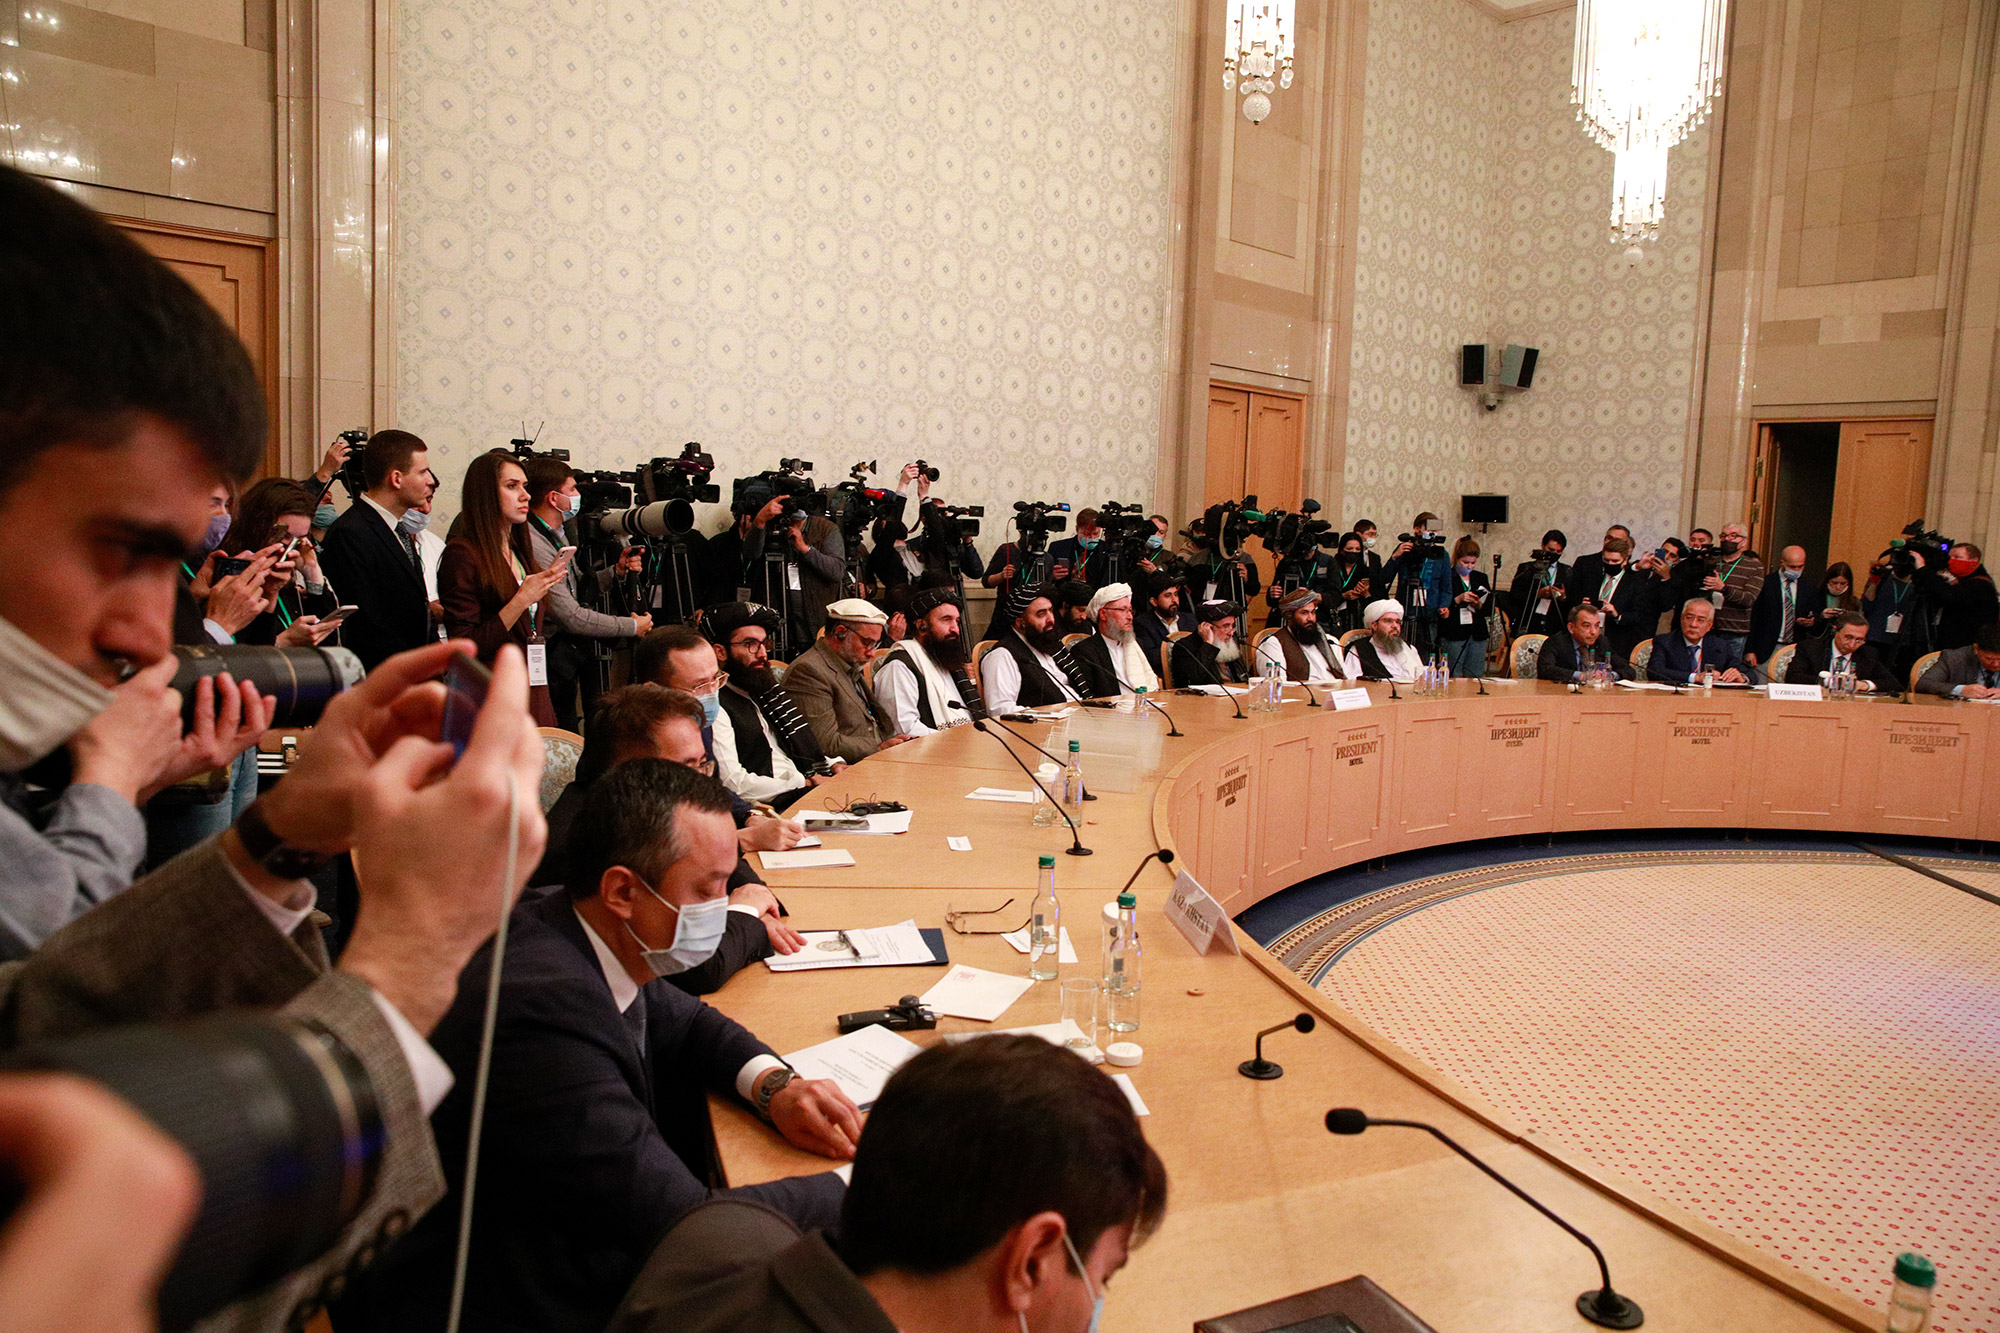 Как сообщали&nbsp;талибы перед встречей, на переговорах они намерены попросить у стран-участниц политическую и экономическую поддержку